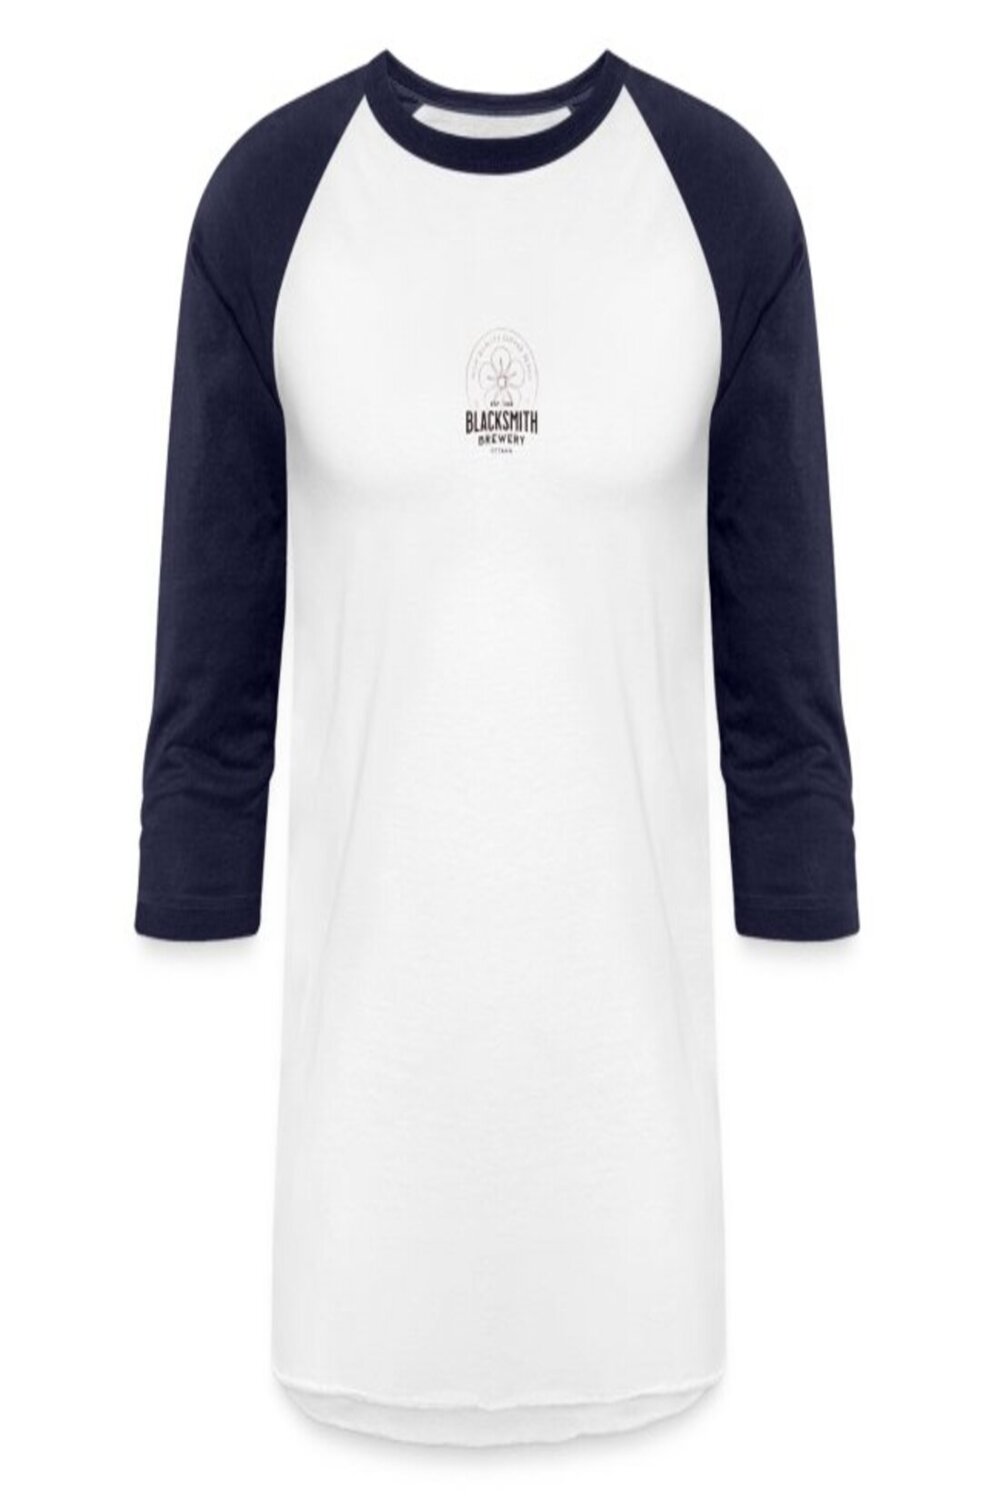 Unisex Baseball T-Shirt pinterest preview image.